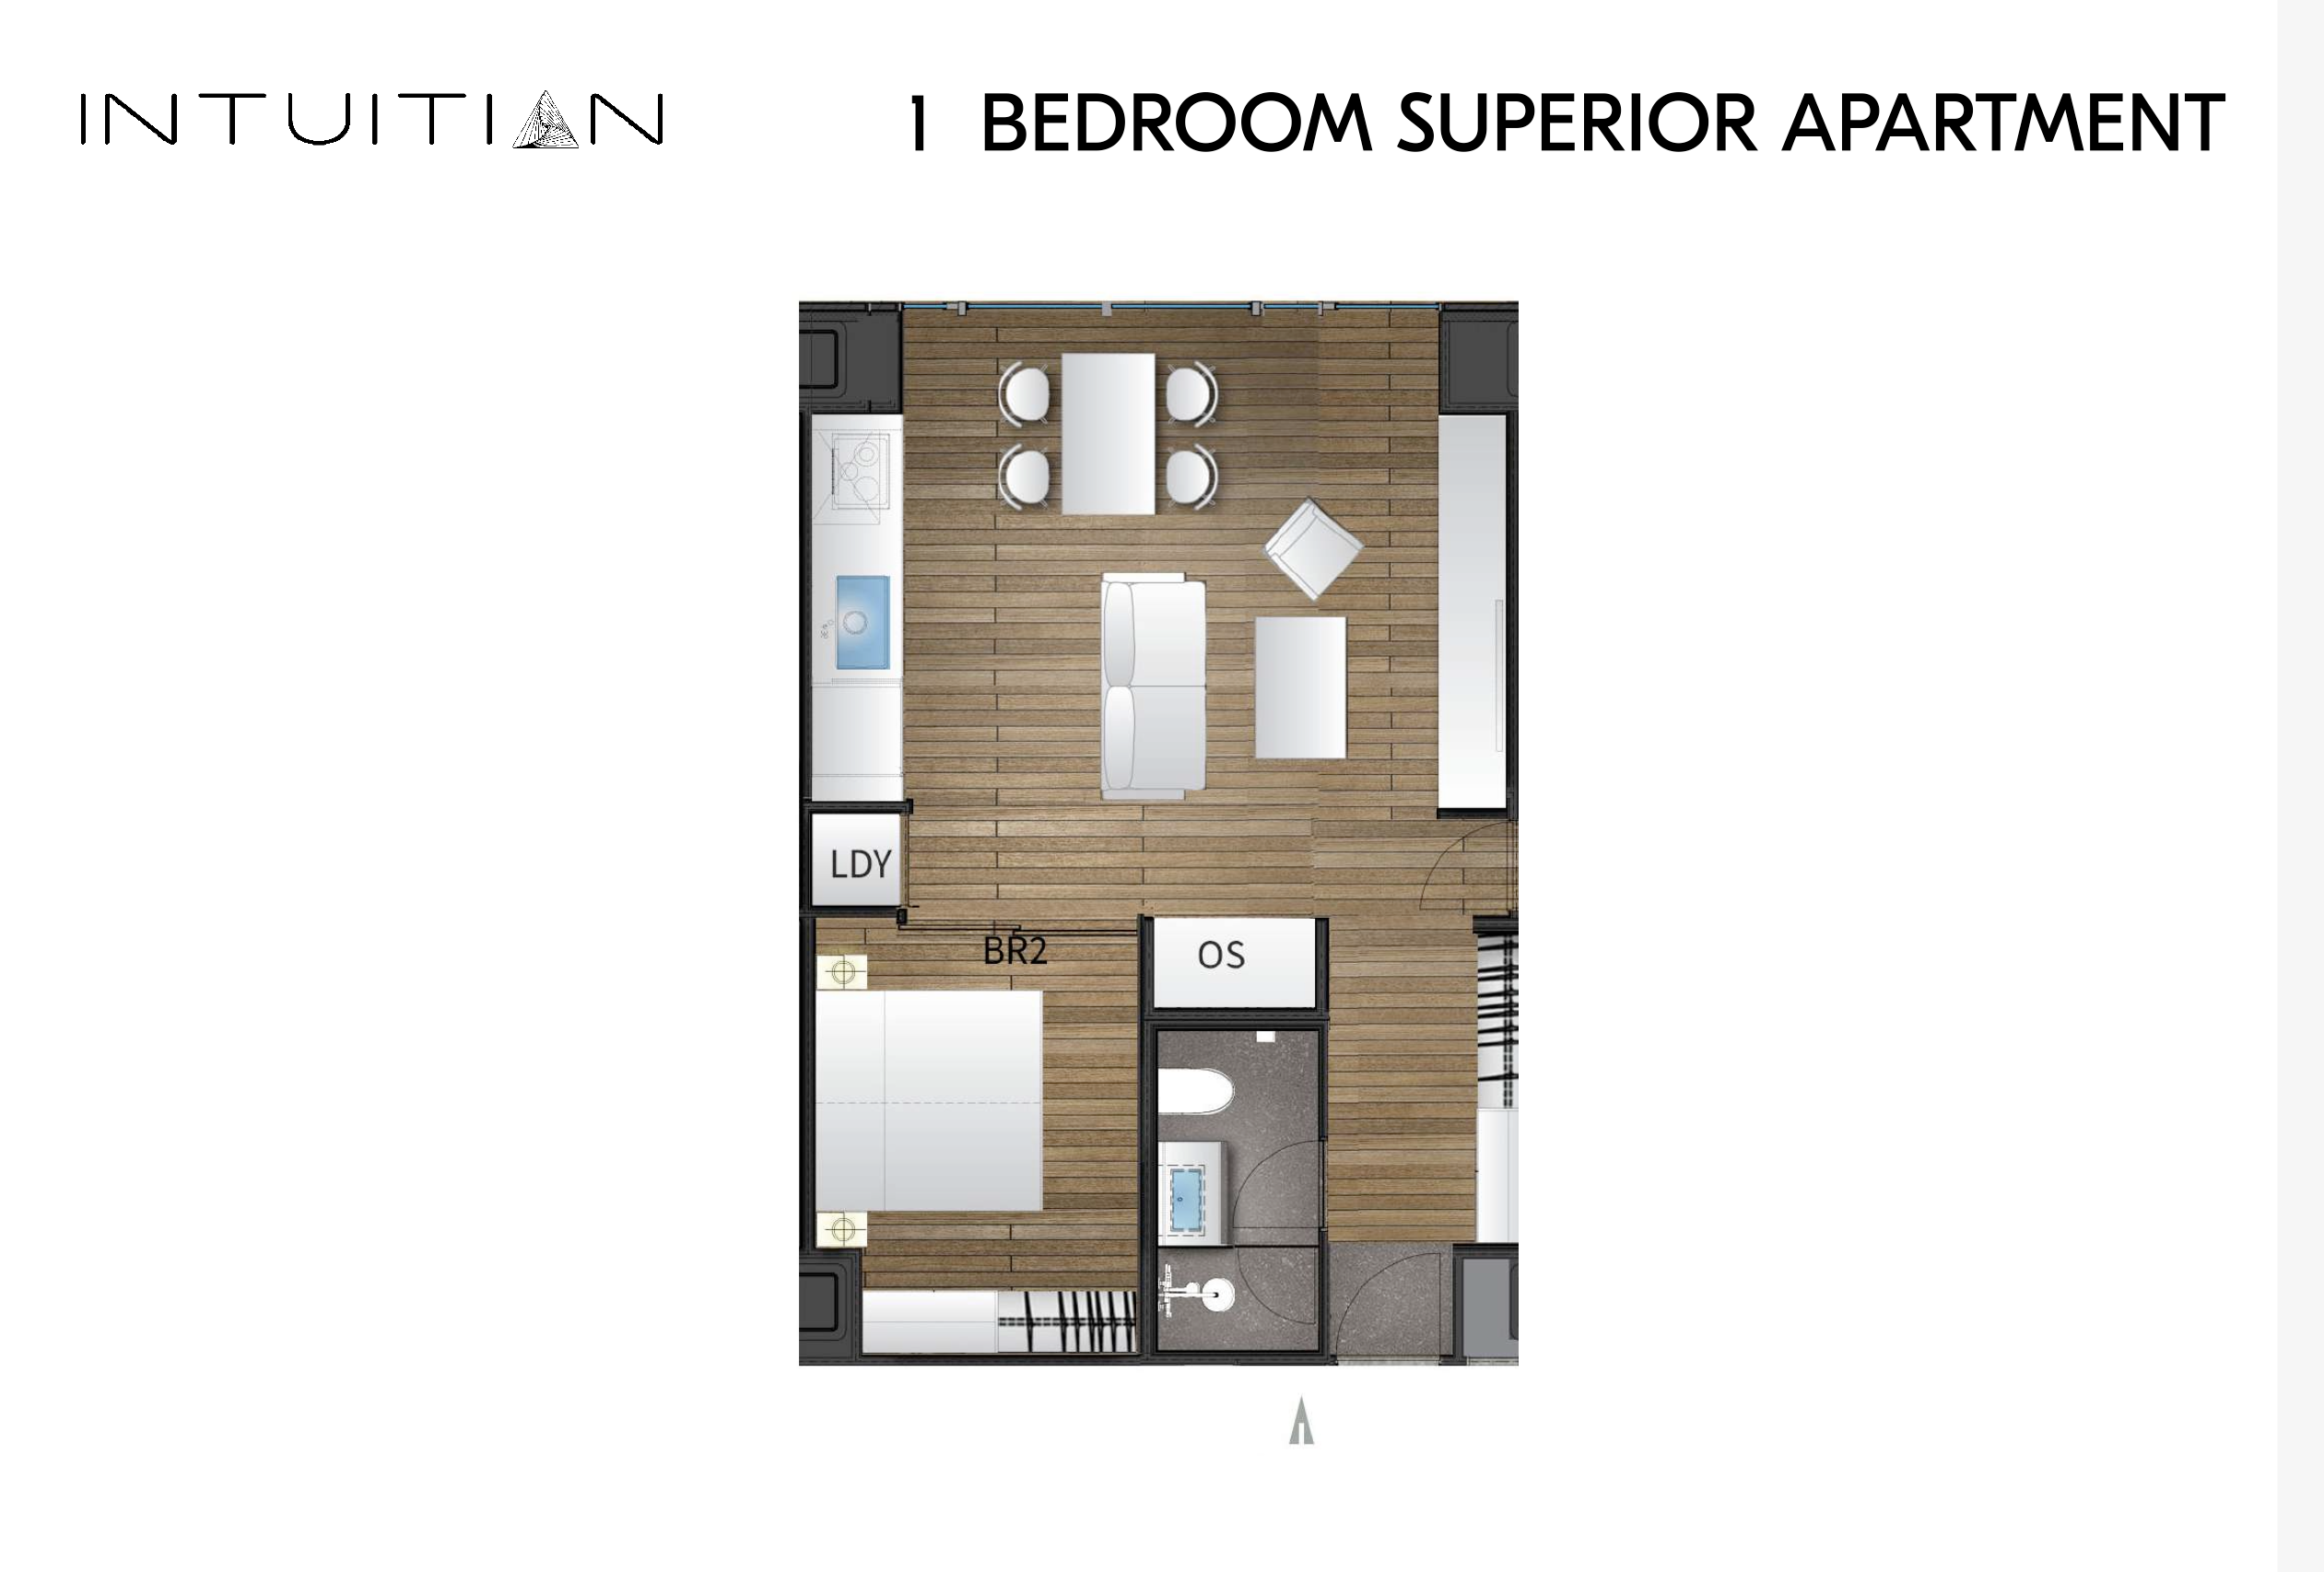 Intuition Niseko_1 bedroom superior_floor plan